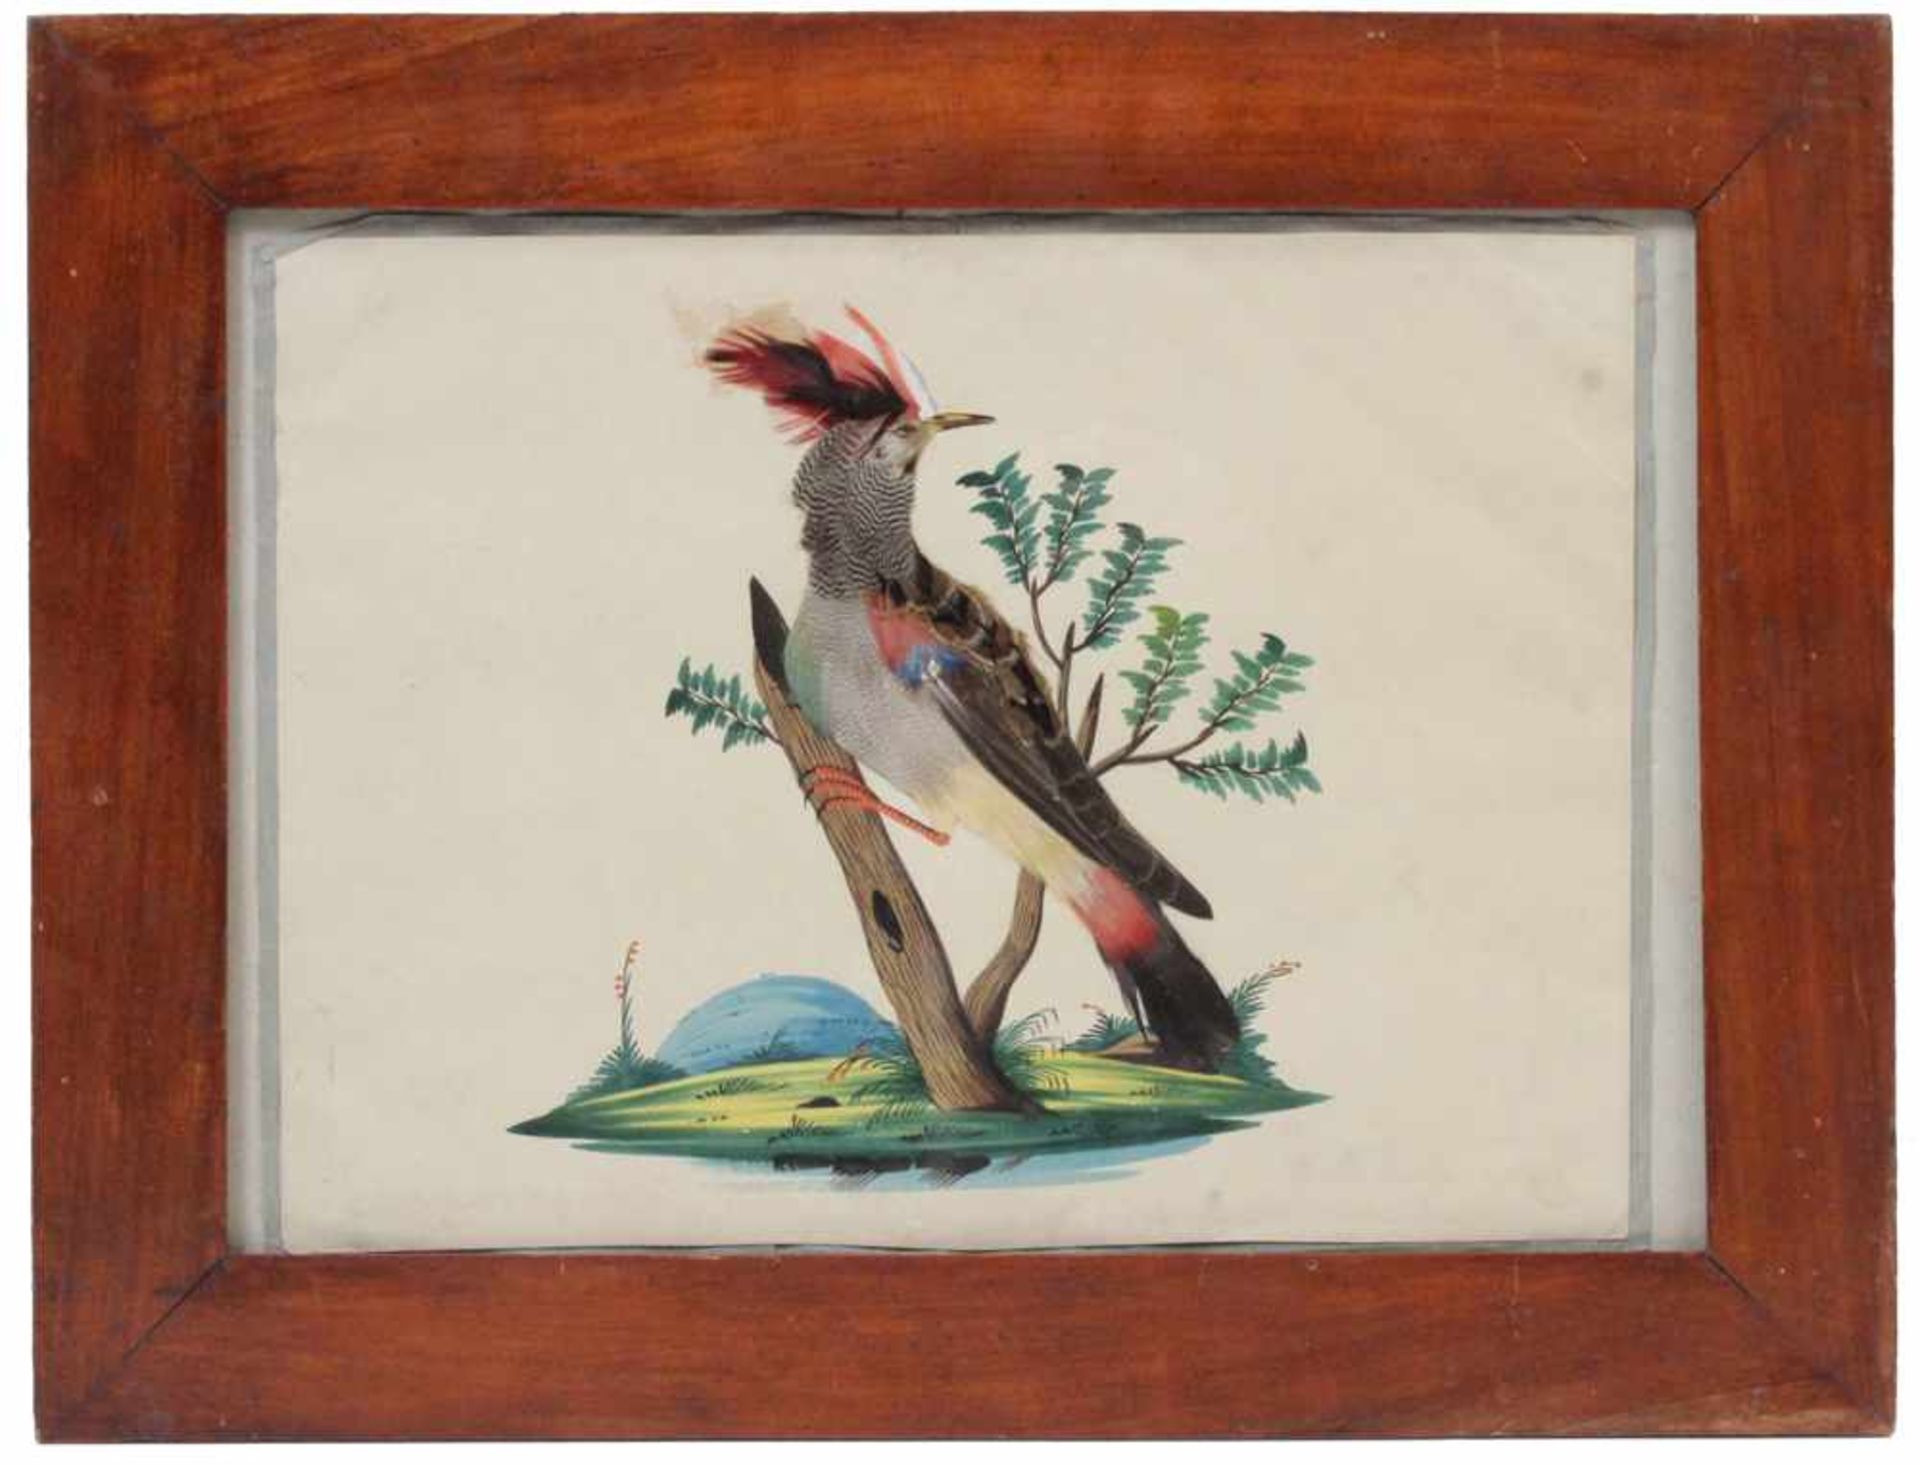 Federbild.Eger, 19. Jh. Auf Papier, aquarellierter Landschaftssockel mit Wiedehopf naturalistisch